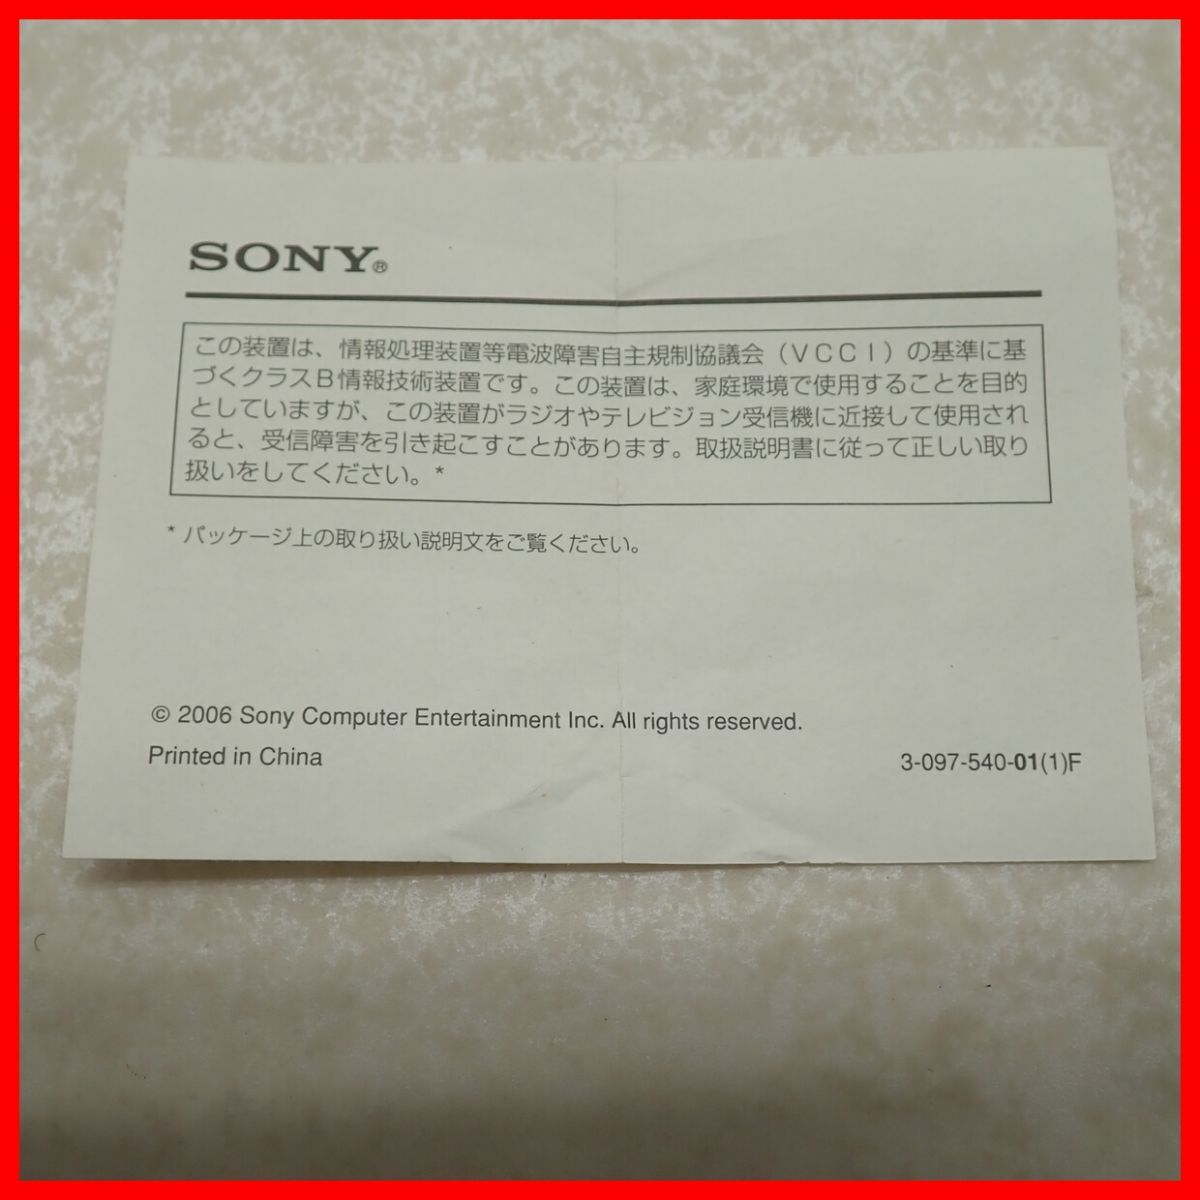  не использовался PS3 PlayStation 3 карта памяти адаптор CECHZM1 PlayStation3 MEMORY CARD ADAPTOR SONY Sony коробка мнение есть [10